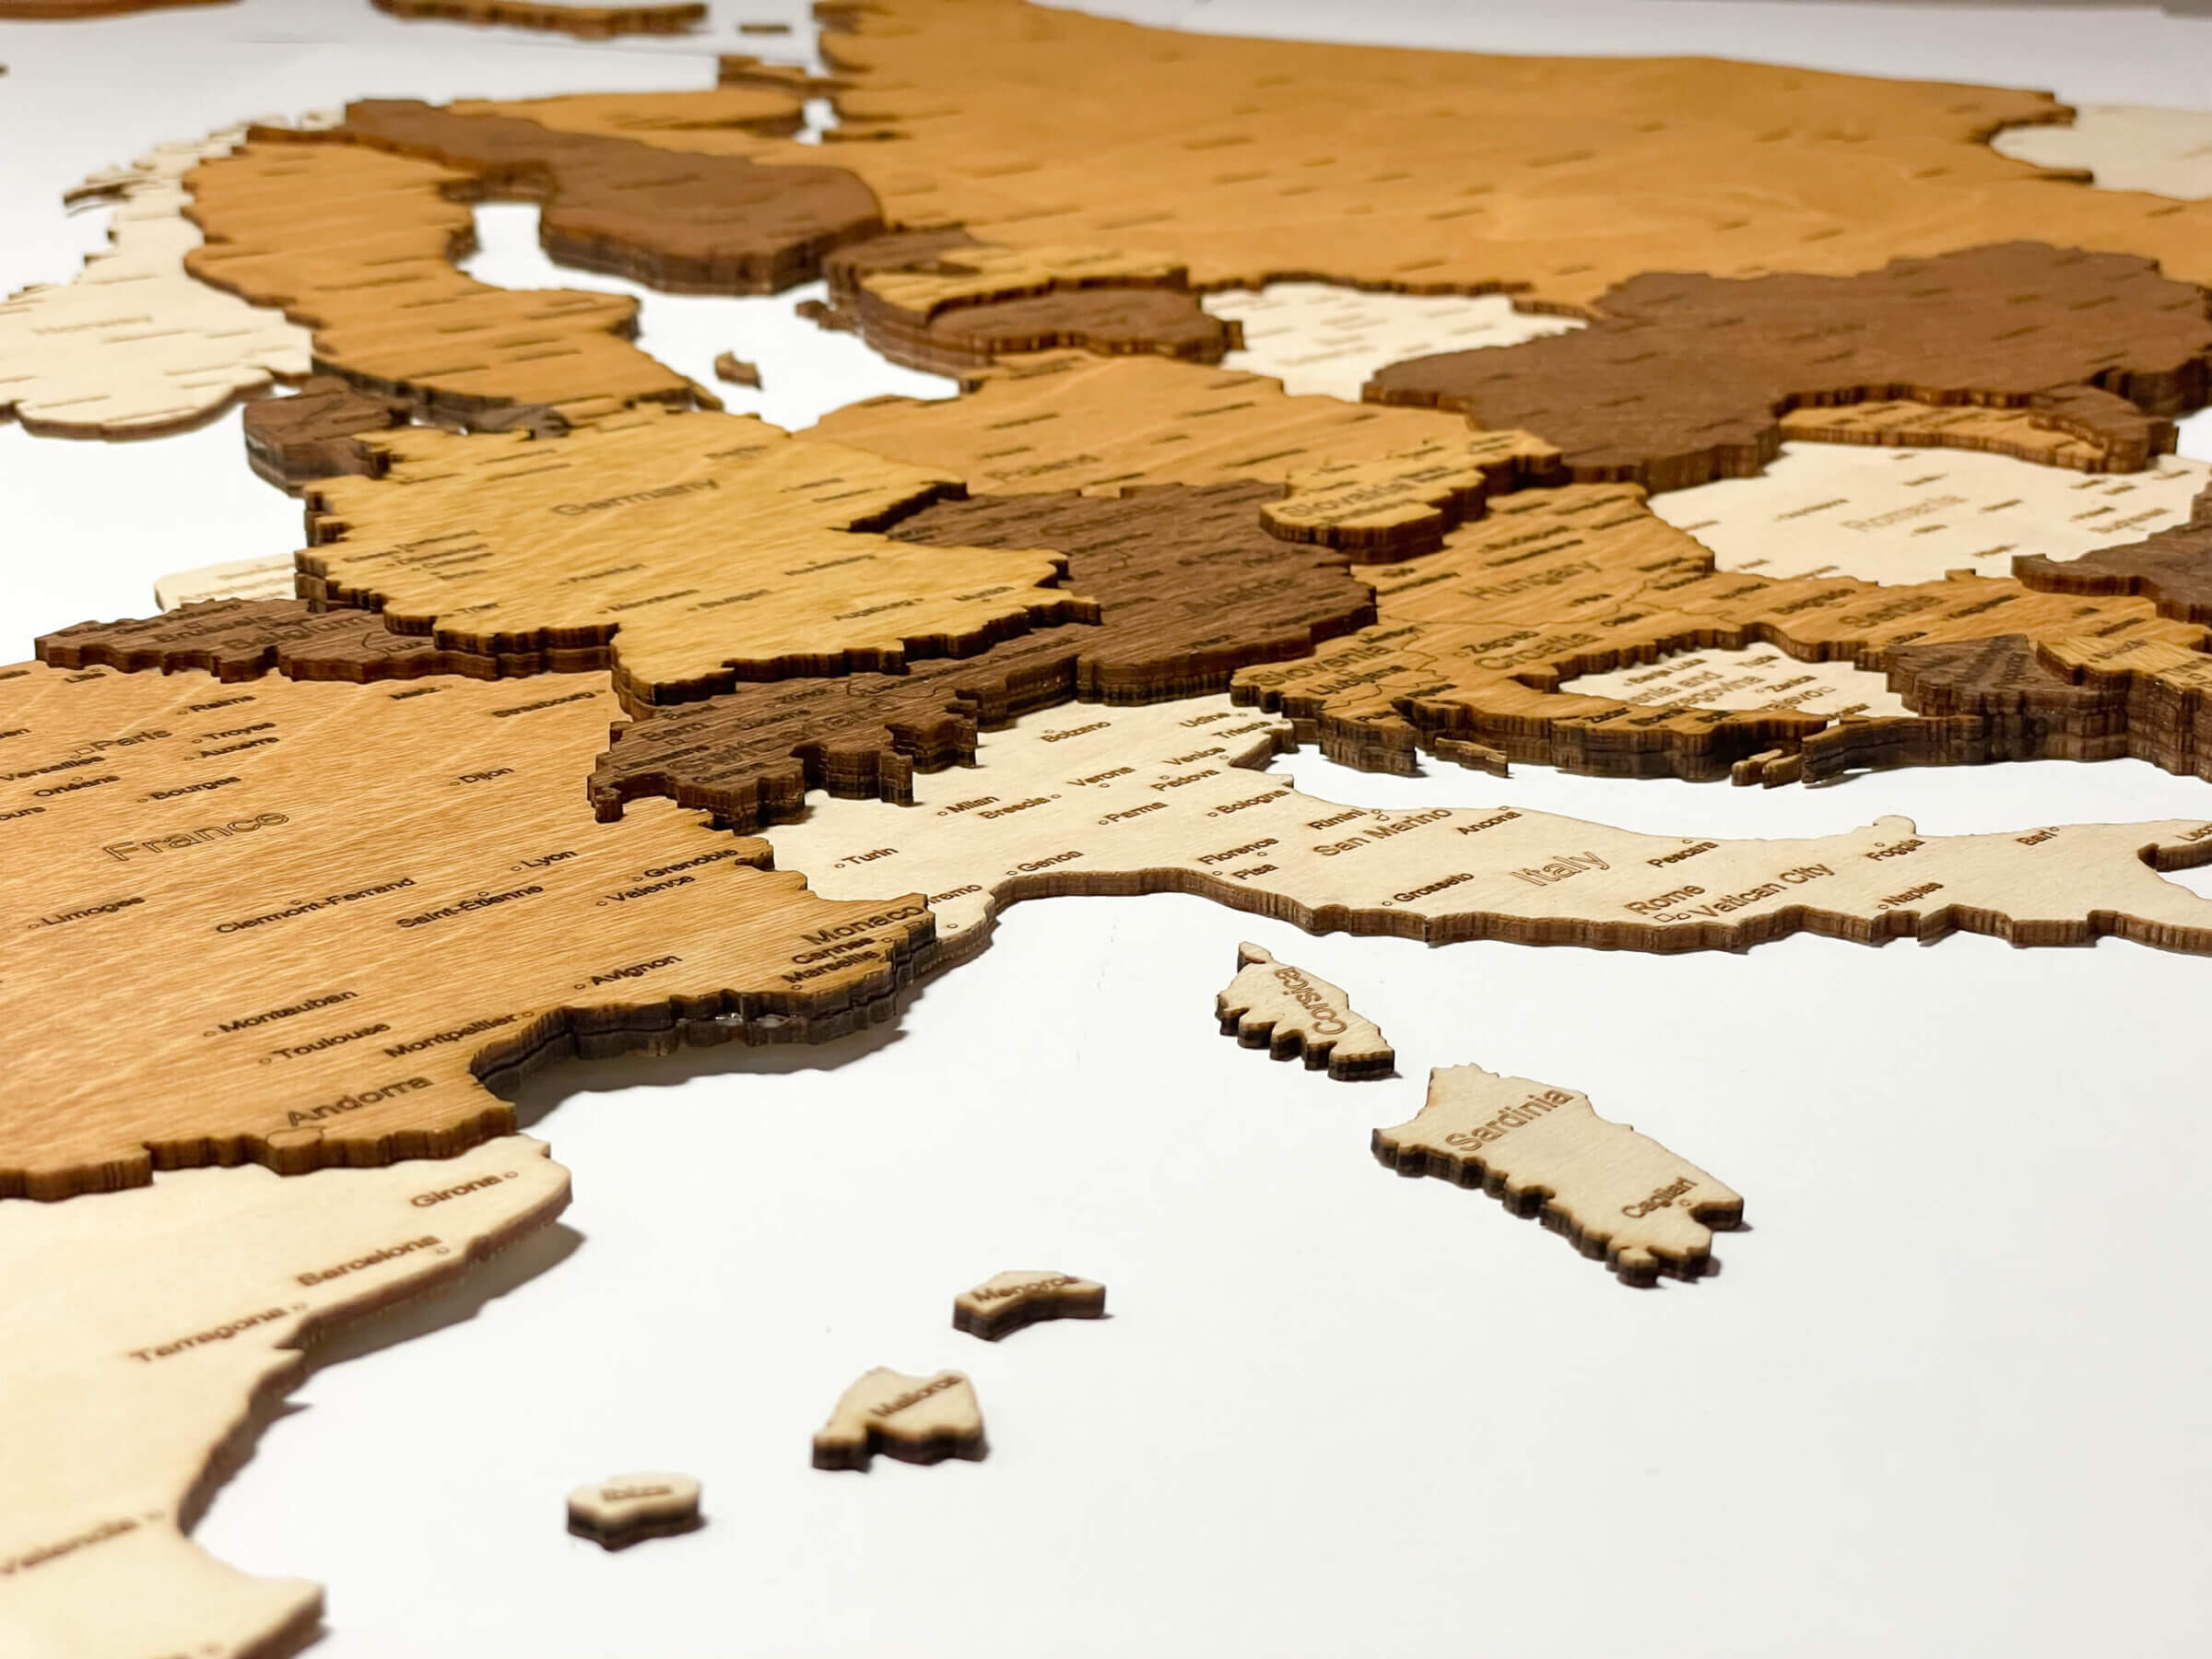 Stredozemné more - 3D drevená mapa Európy